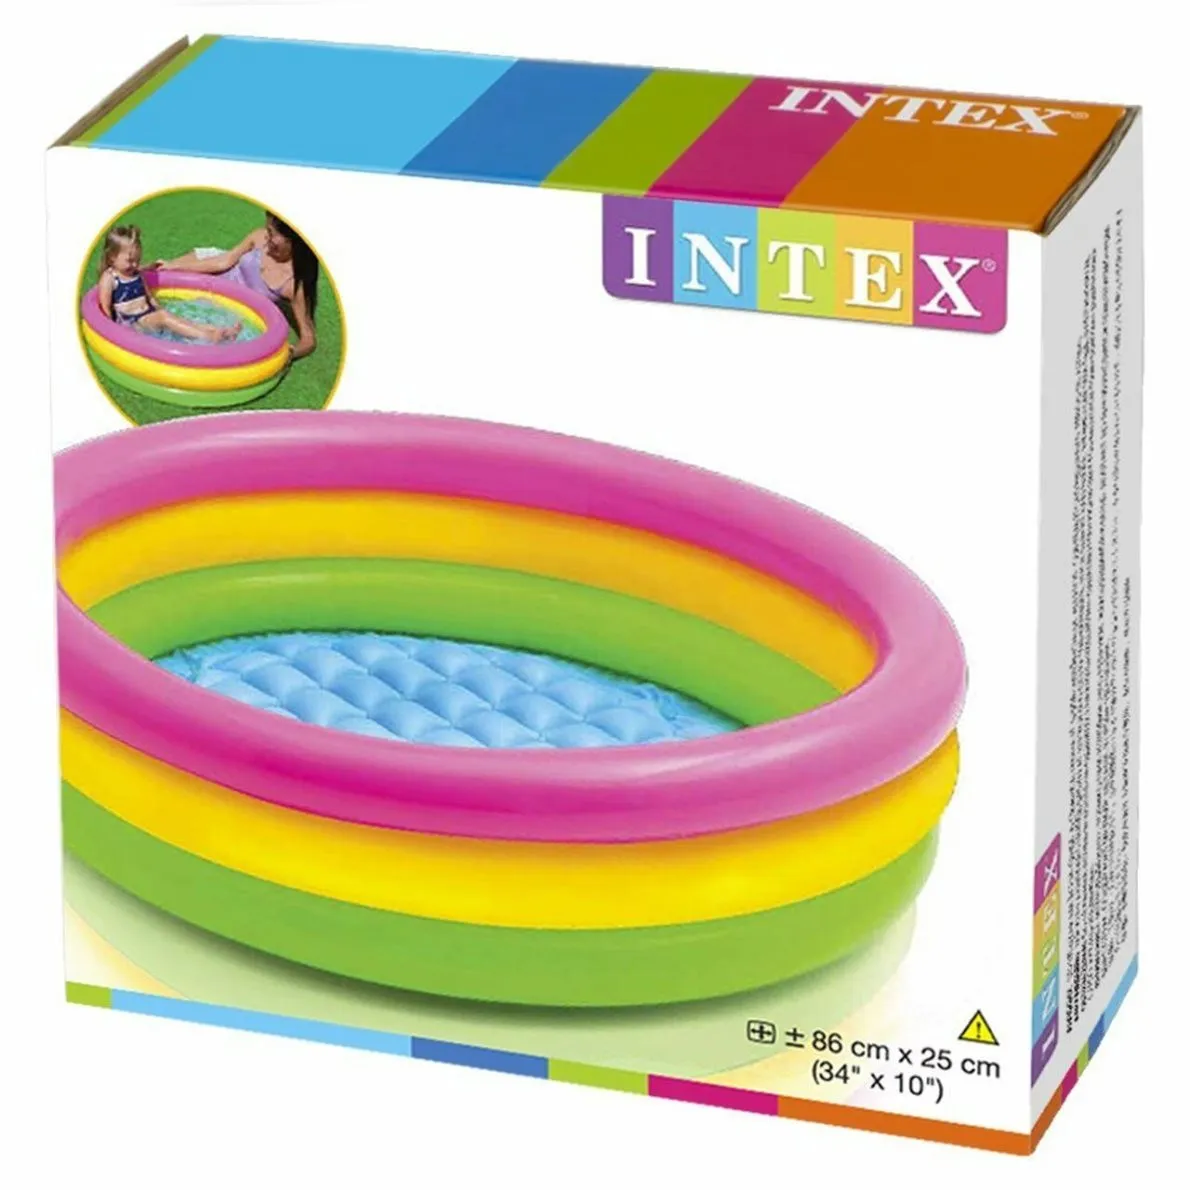 Детский надувной бассейн Intex 86х25 см#3